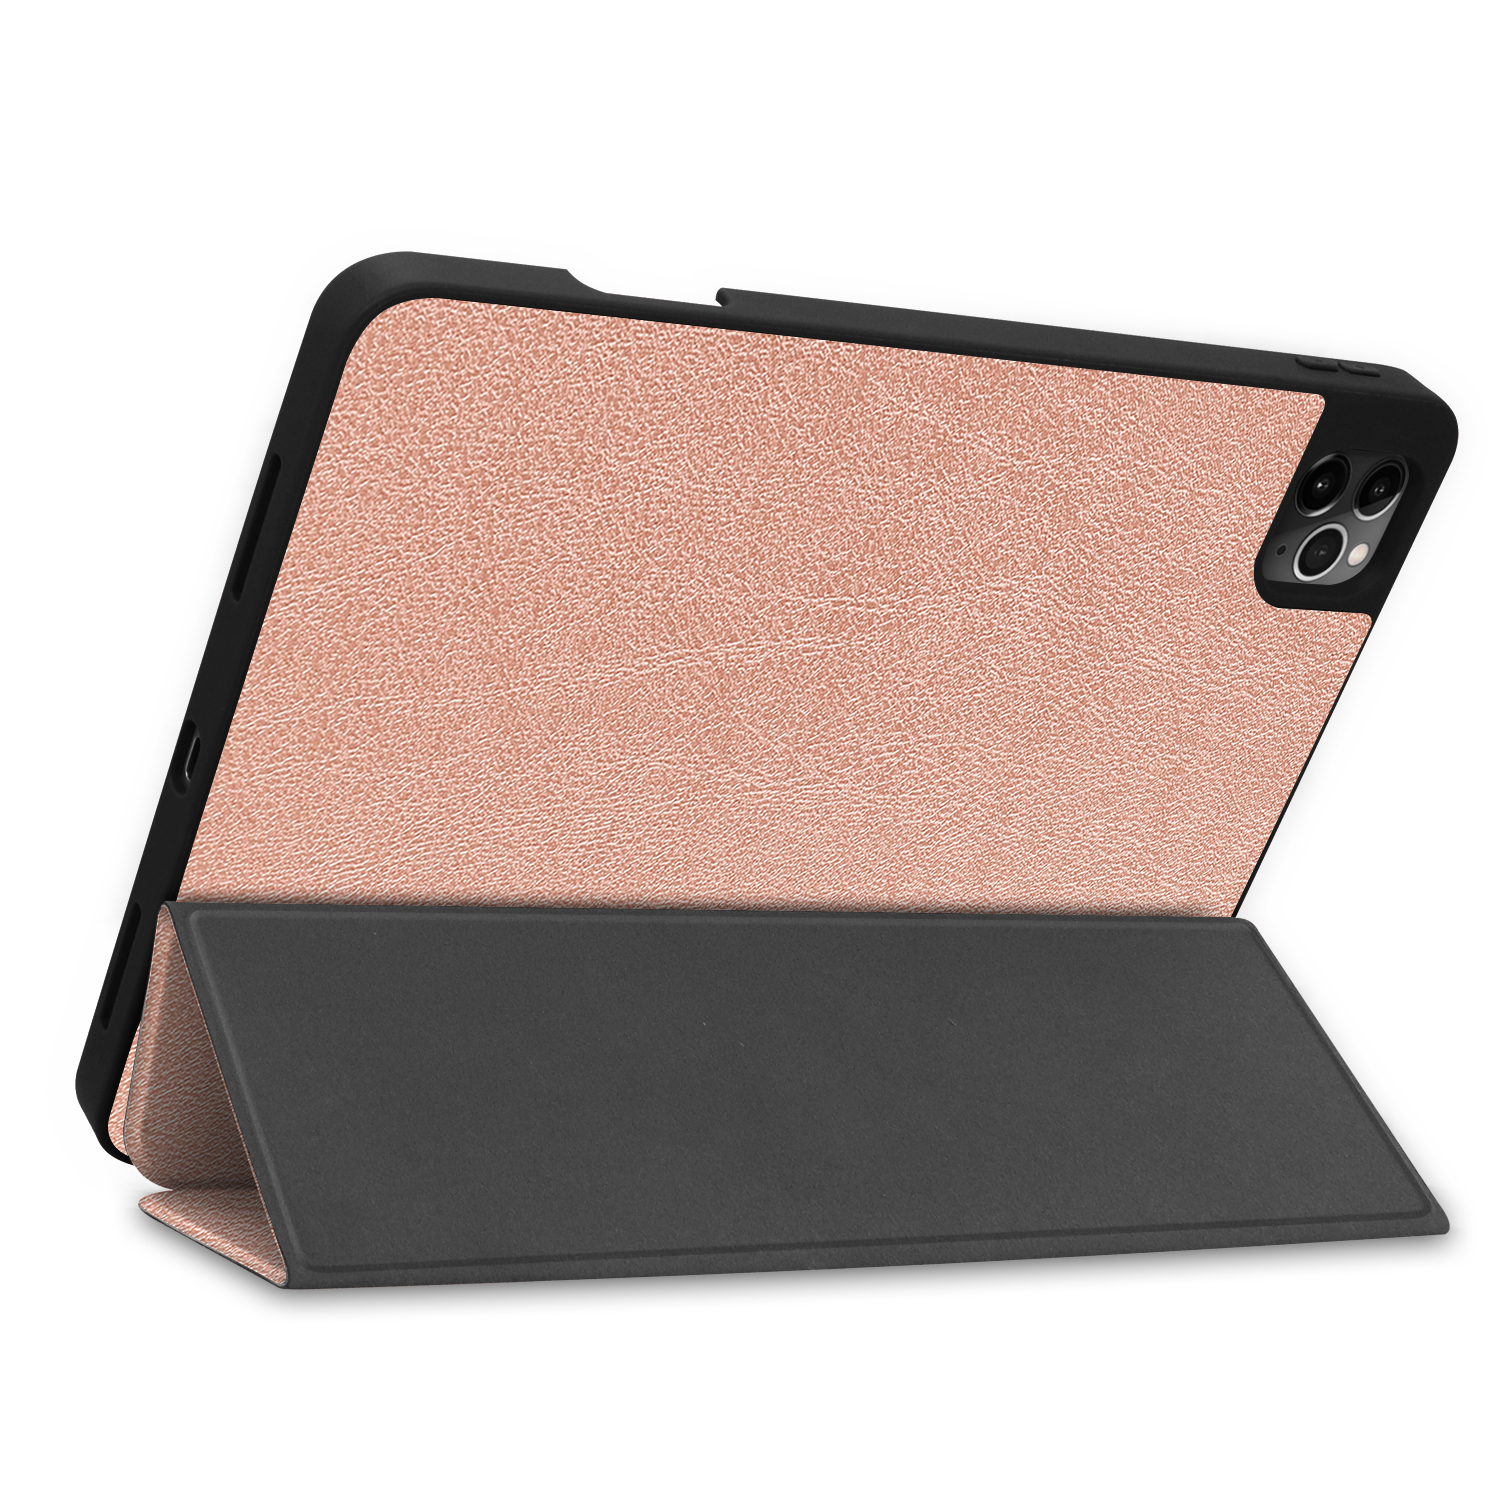 LOBWERK Hülle Schutzhülle Bookcover für iPad 2020 Kunstleder, Pro Zoll bronze 11 Apple